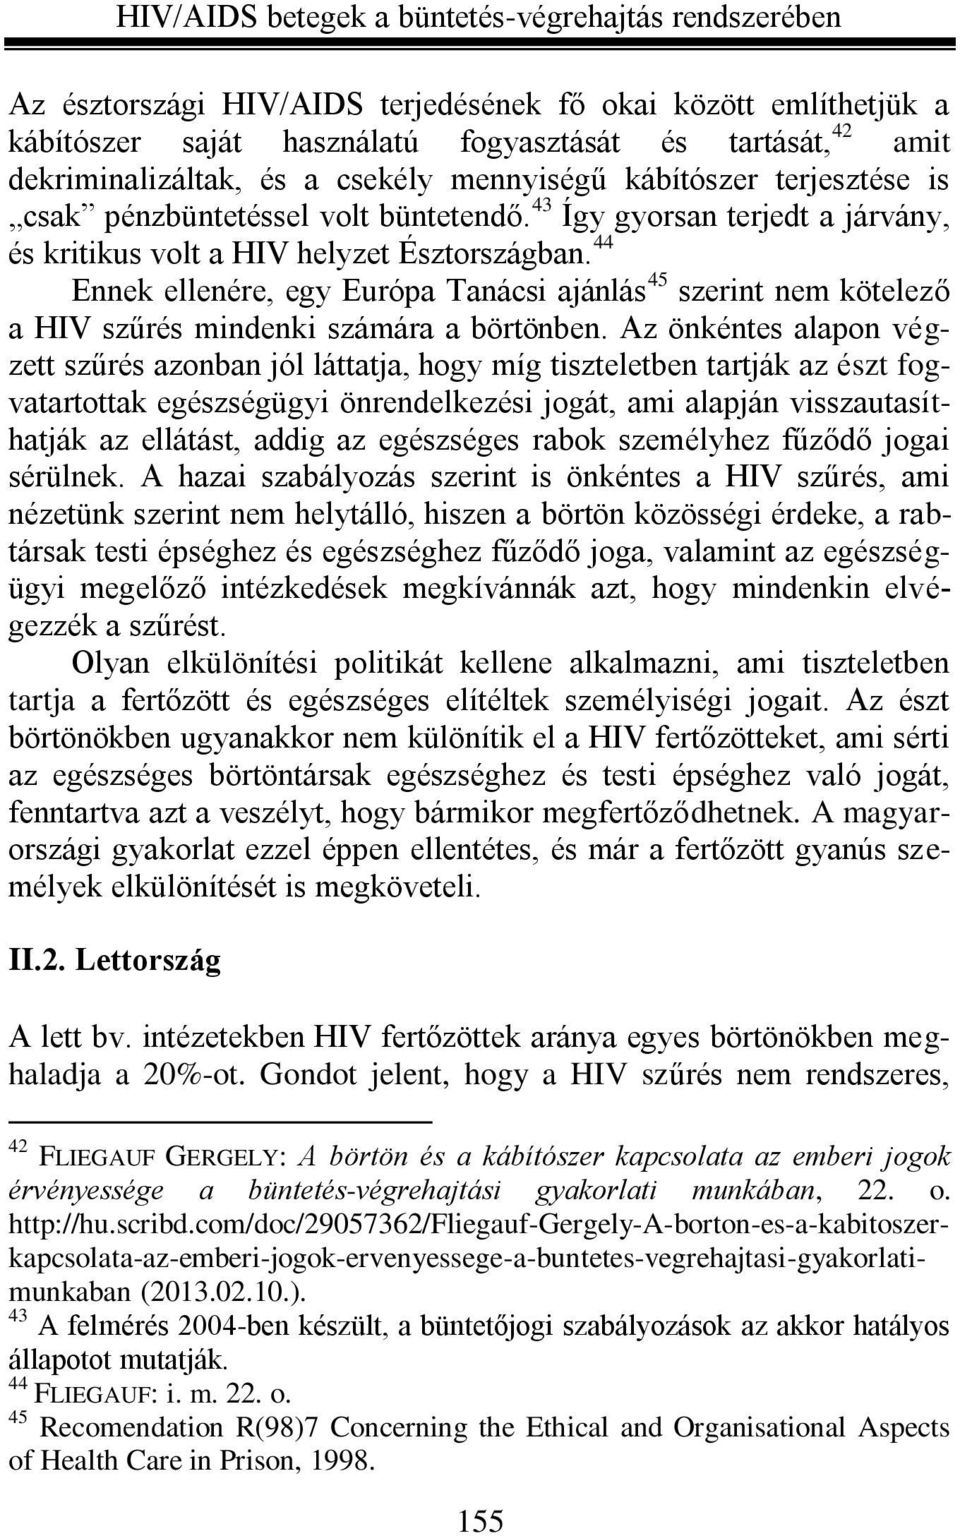 44 Ennek ellenére, egy Európa Tanácsi ajánlás 45 szerint nem kötelező a HIV szűrés mindenki számára a börtönben.